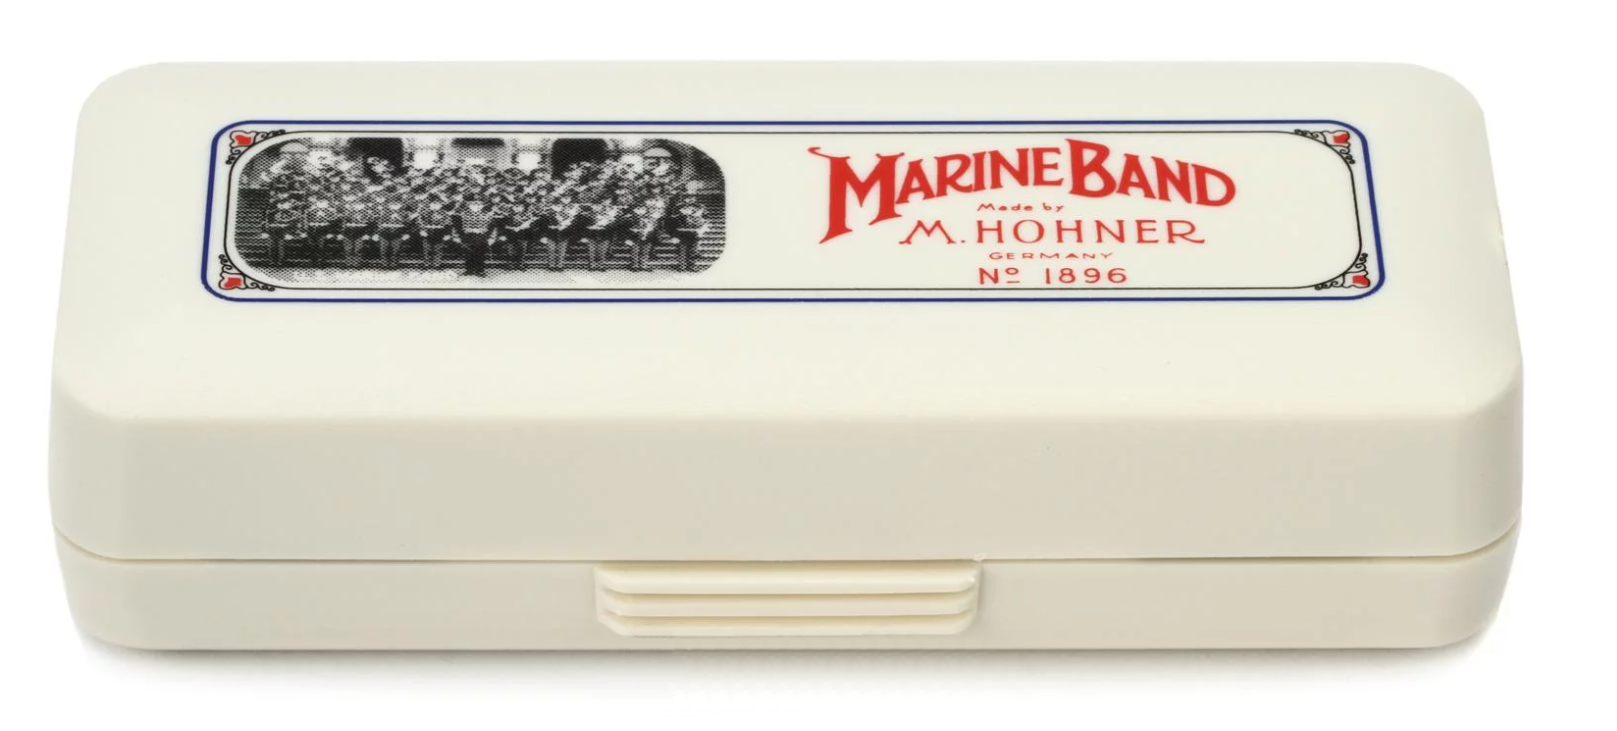 HOHNER  Diatonic Harmonica, Marine Band 1896 - Key of Bb